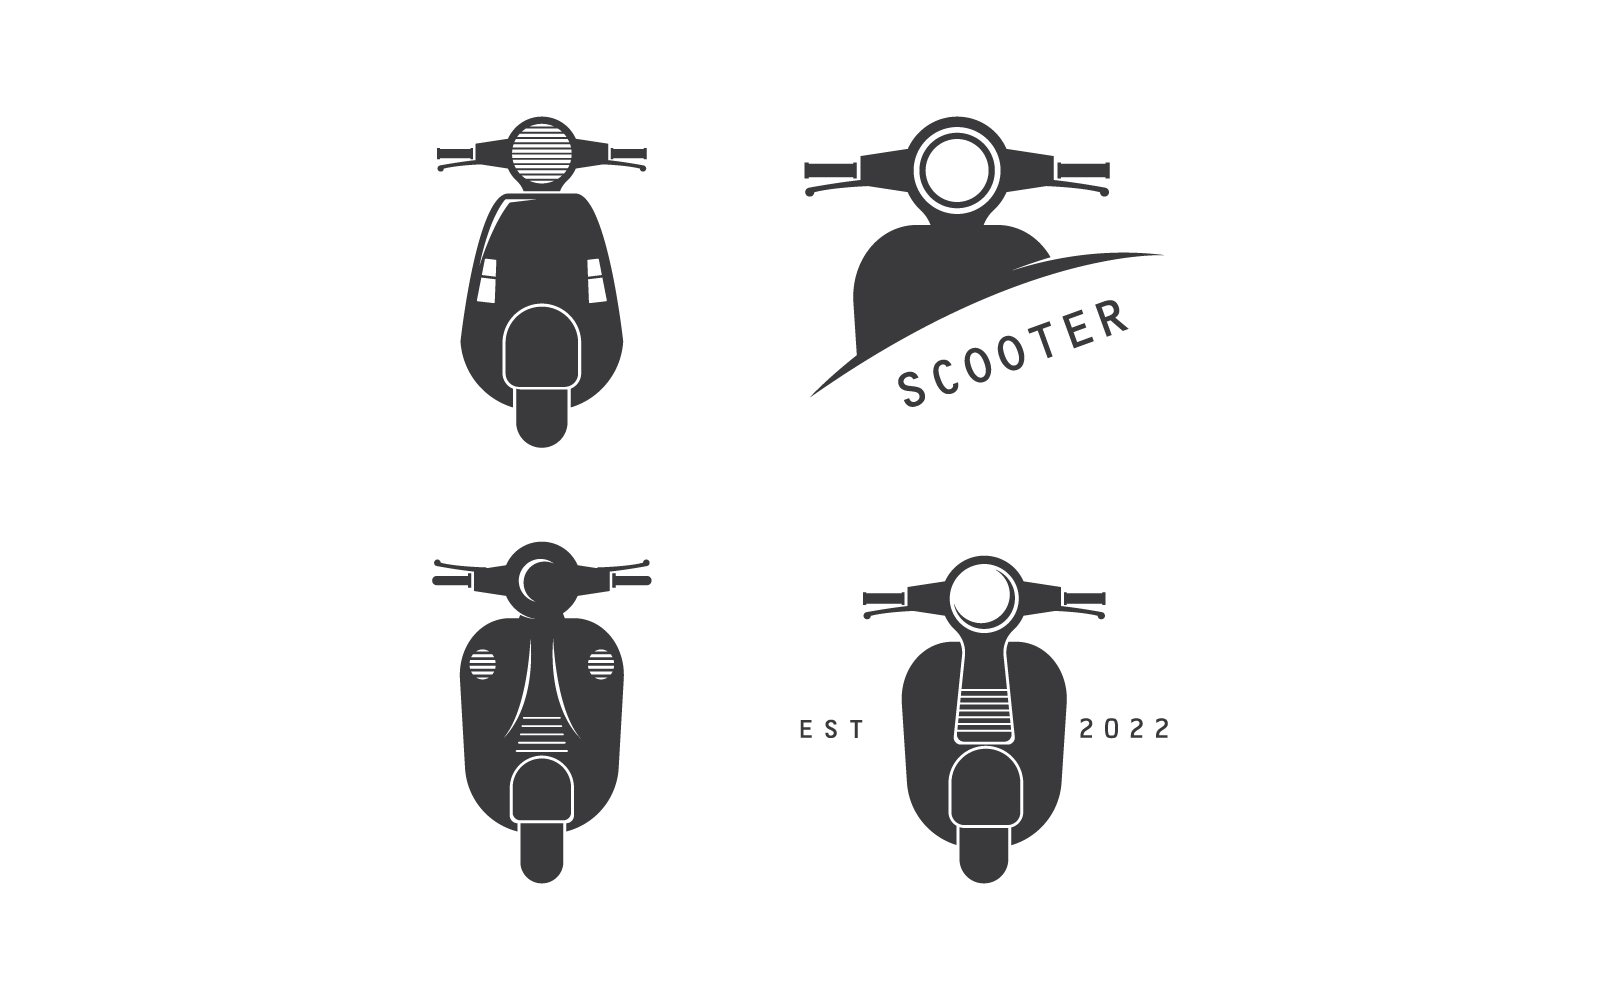 Scooter logo vector illustration flat design eps 10